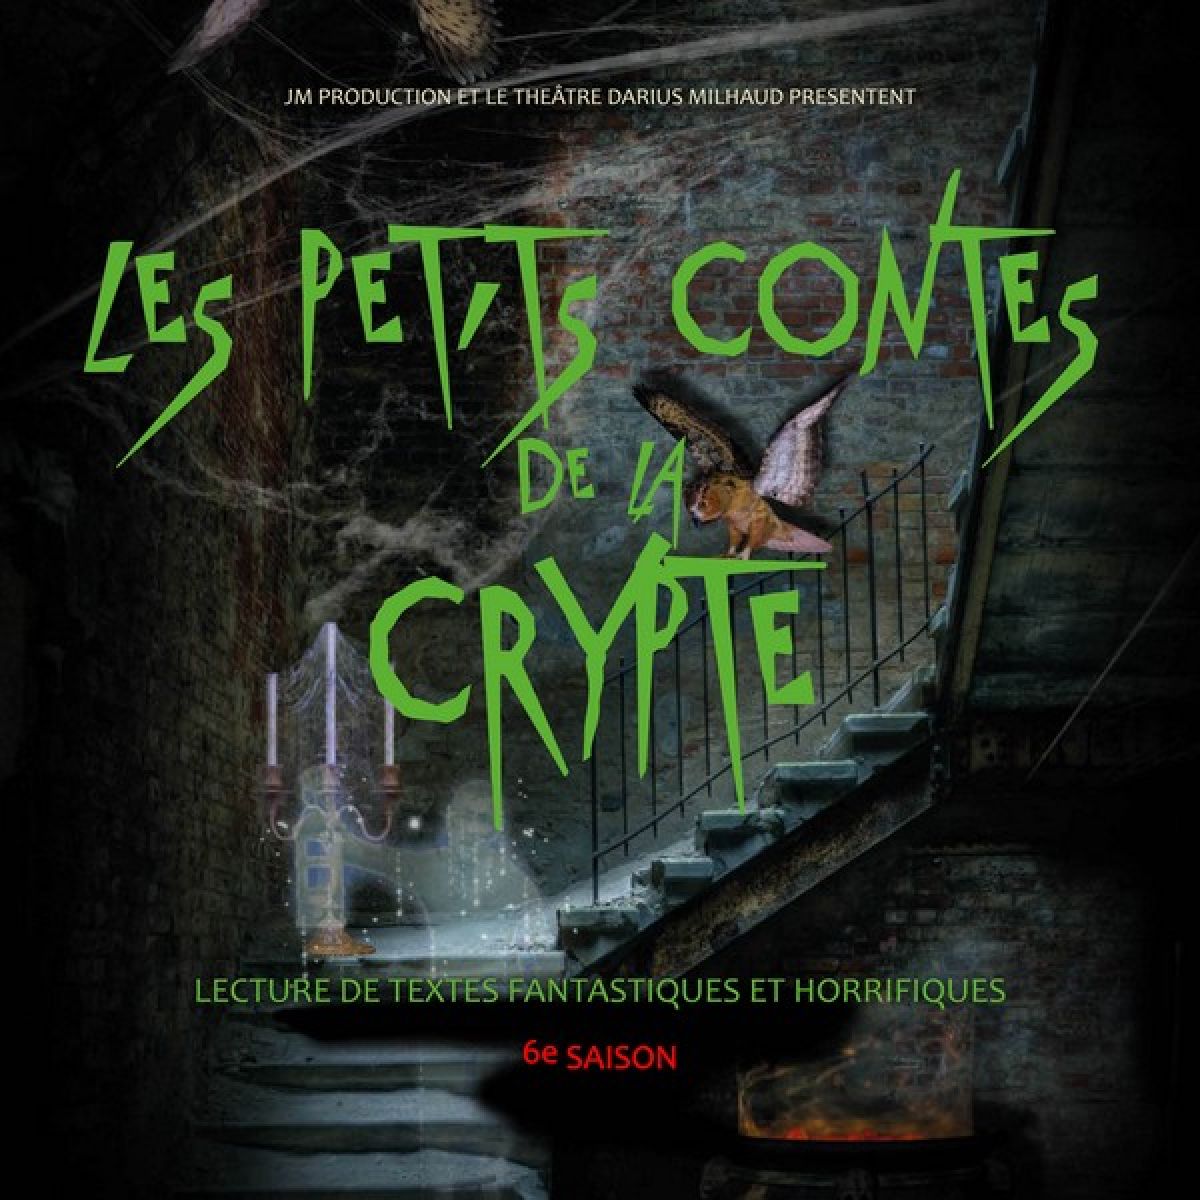 Les petits contes de la crypte - 6ème saison